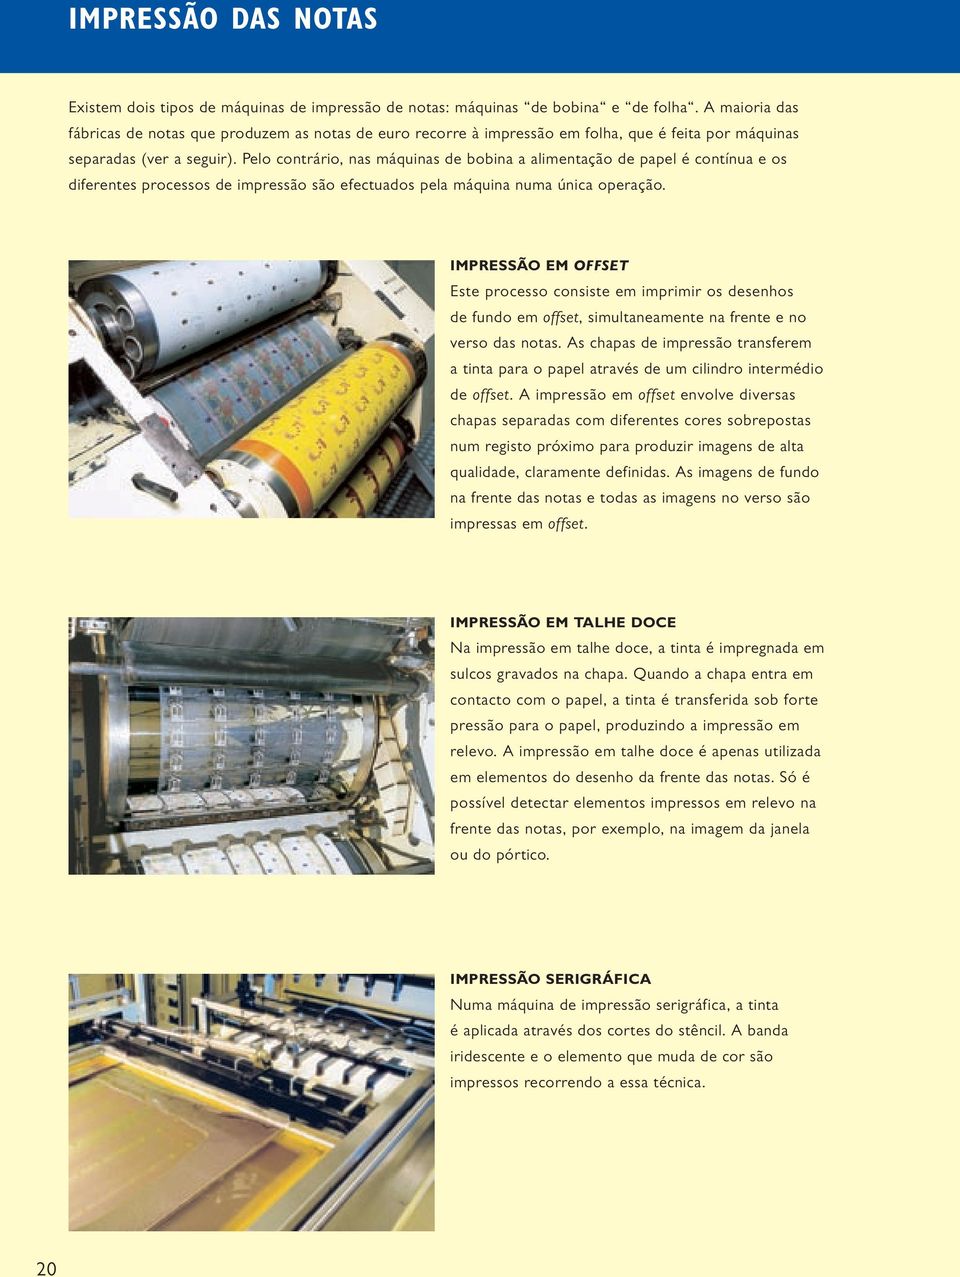 Pelo contrário, nas máquinas de bobina a alimentação de papel é contínua e os diferentes processos de impressão são efectuados pela máquina numa única operação.